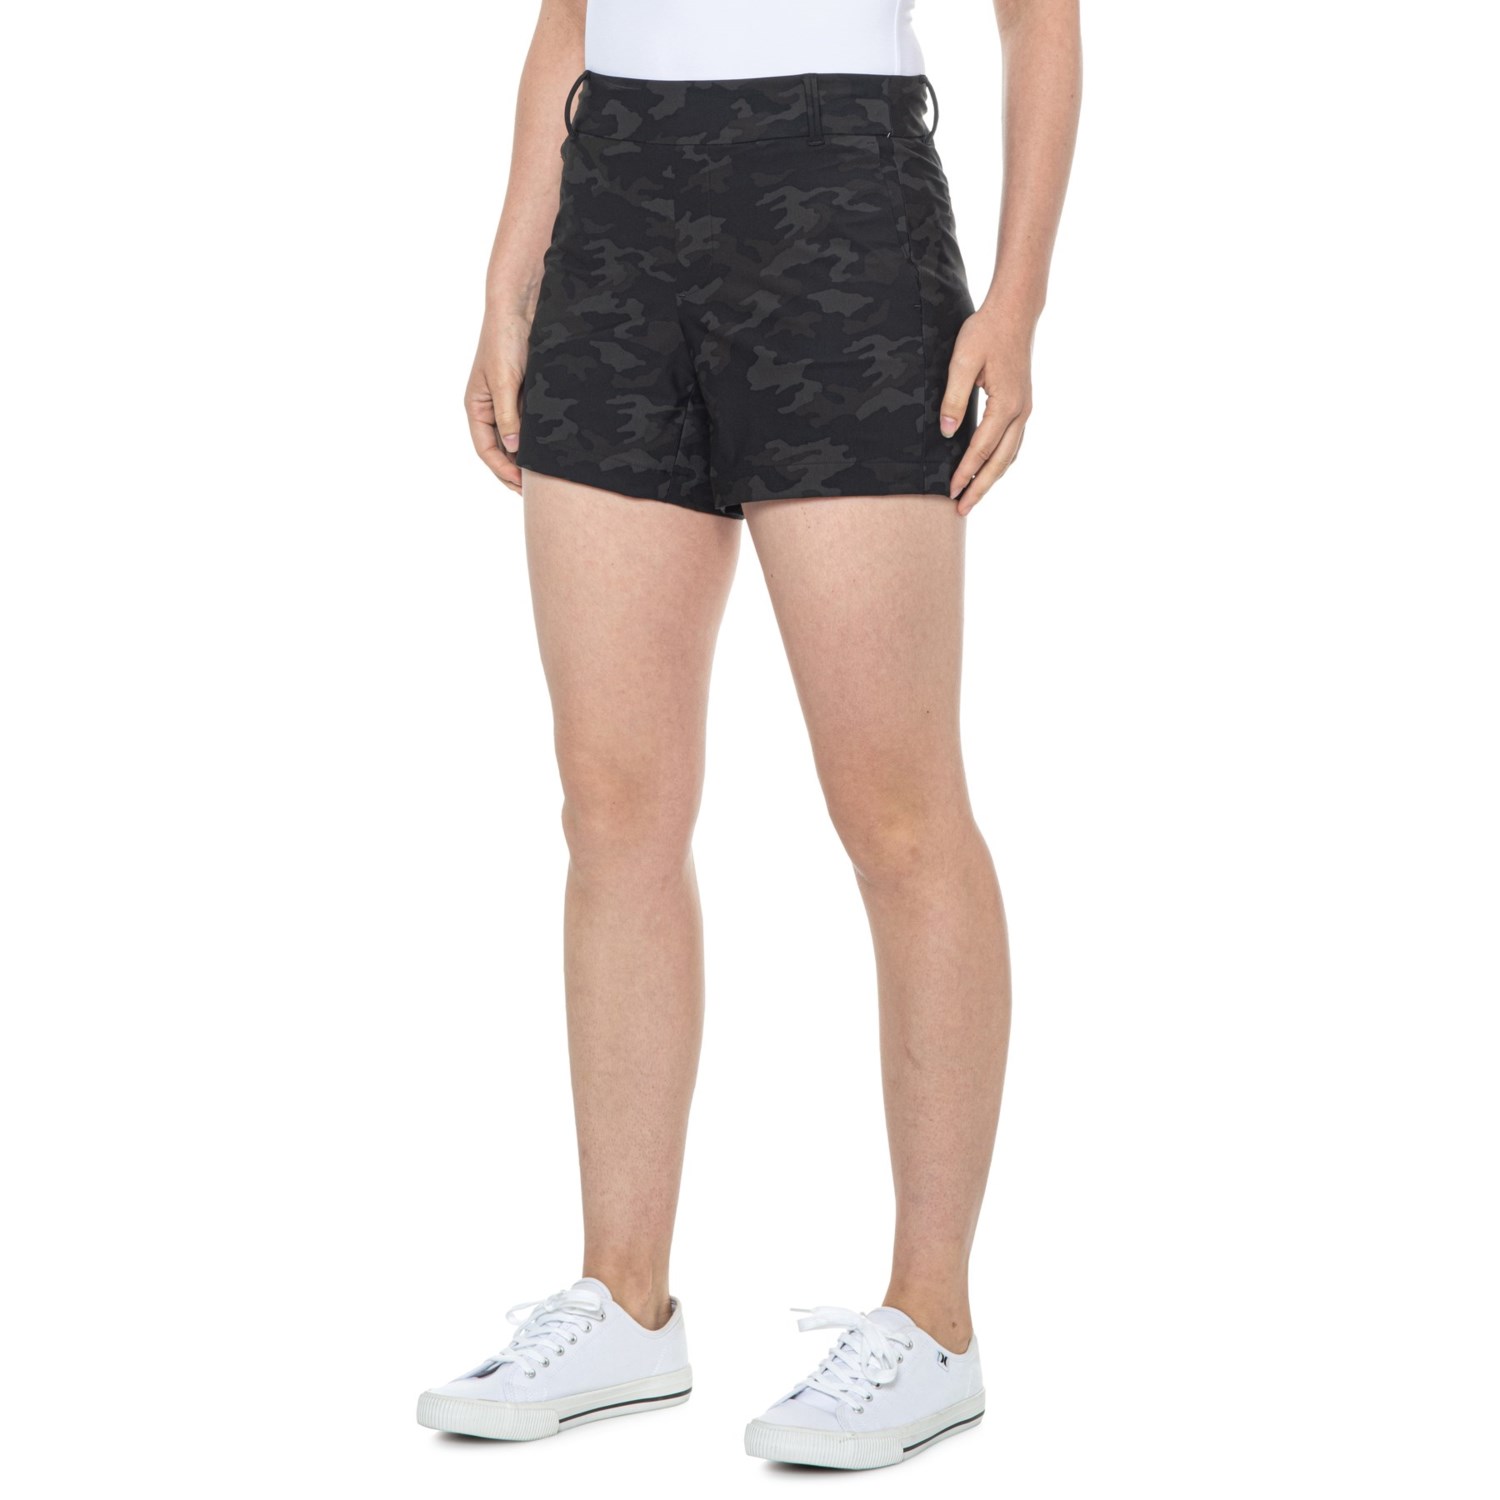 Spanx Sunshine Shorts - 4” - Save 62%